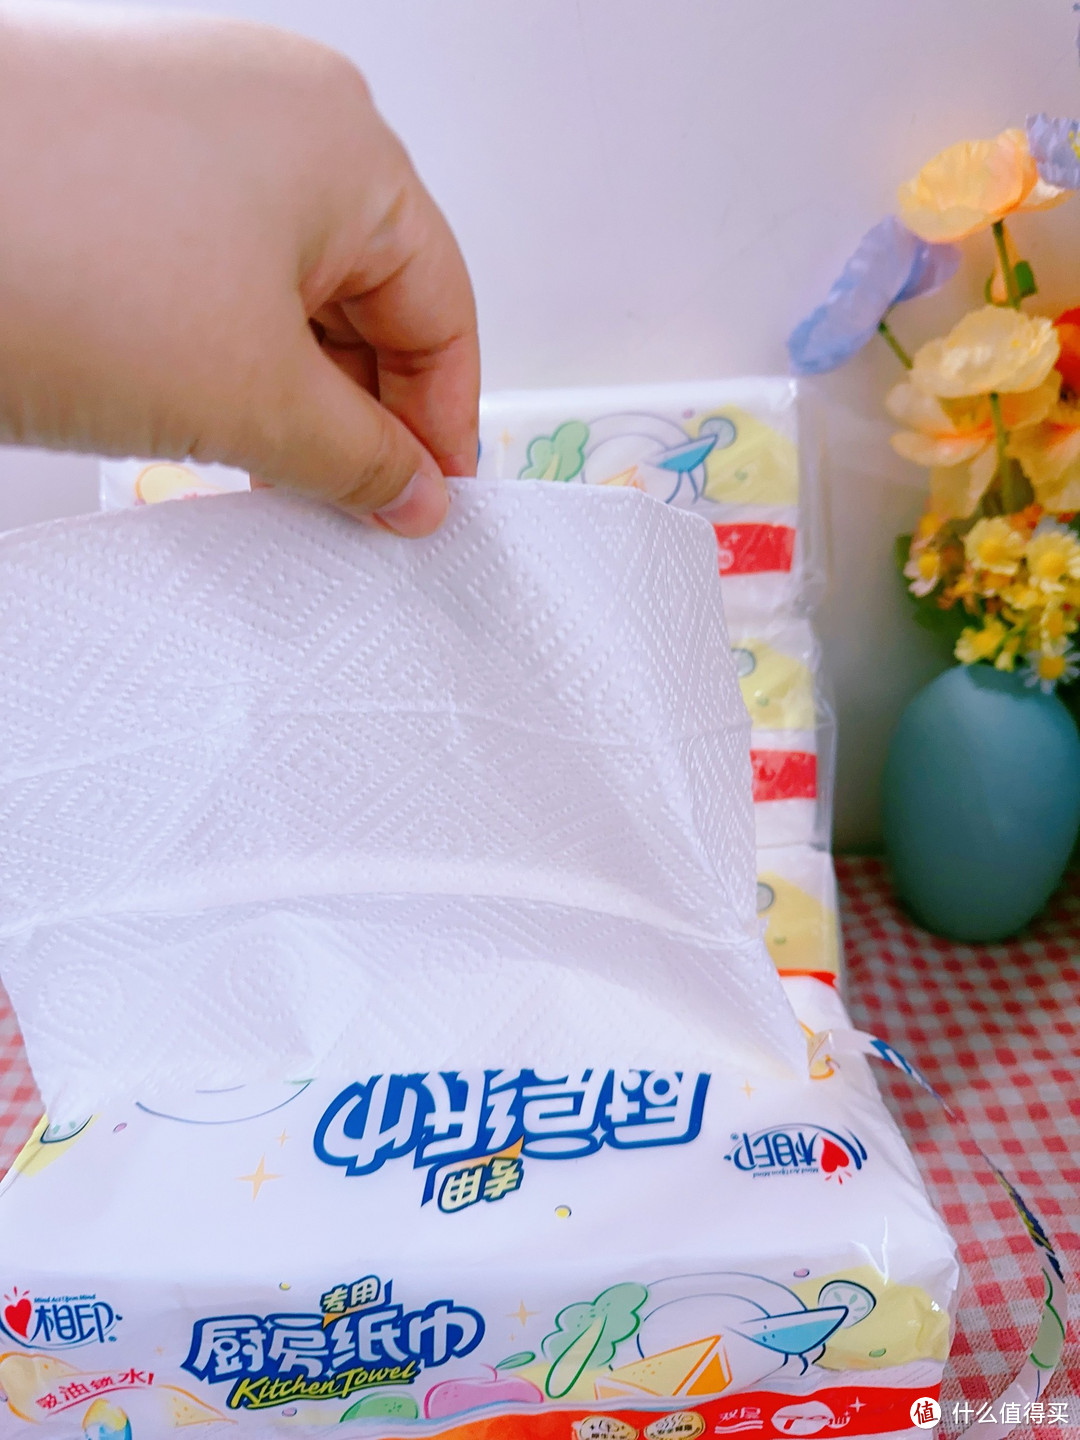 仅需一份心相印厨房纸巾，让你的家庭清洁更加轻松!